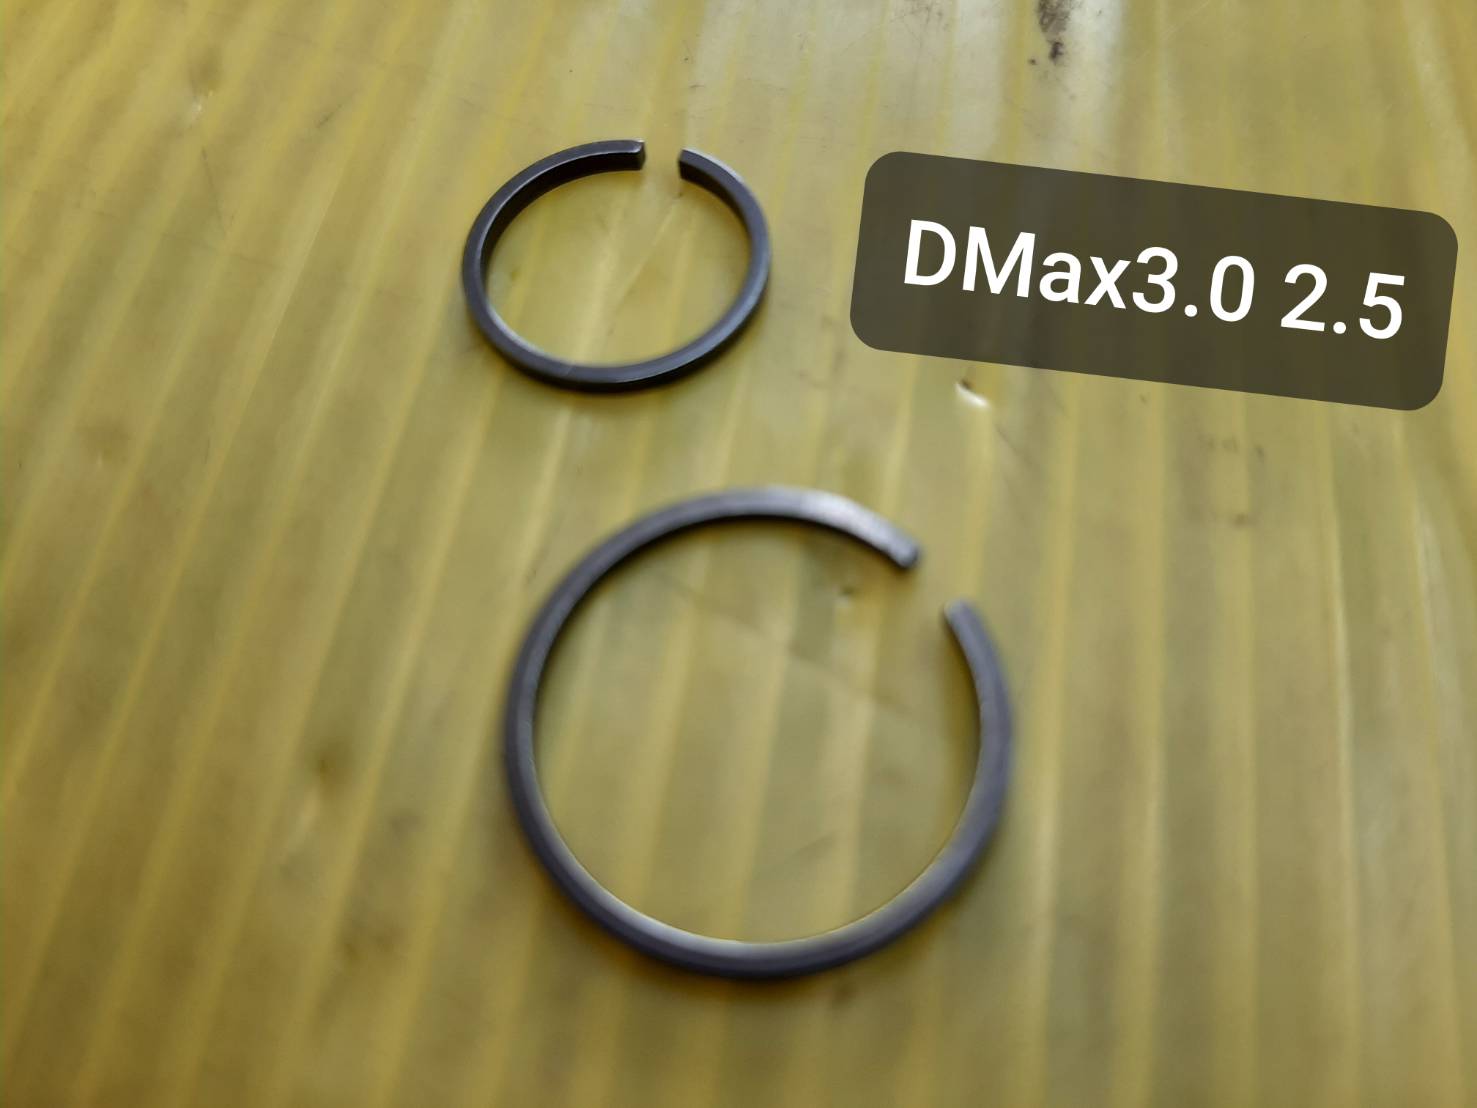 แหวนหน้า และแหวนหลัง สำหรับซ่อมเทอร์โบ ของ ดีแม็ค3.0 2.5 (แก้ปัญหาน้ำมันไหล รั่วหน้าและหลัง)